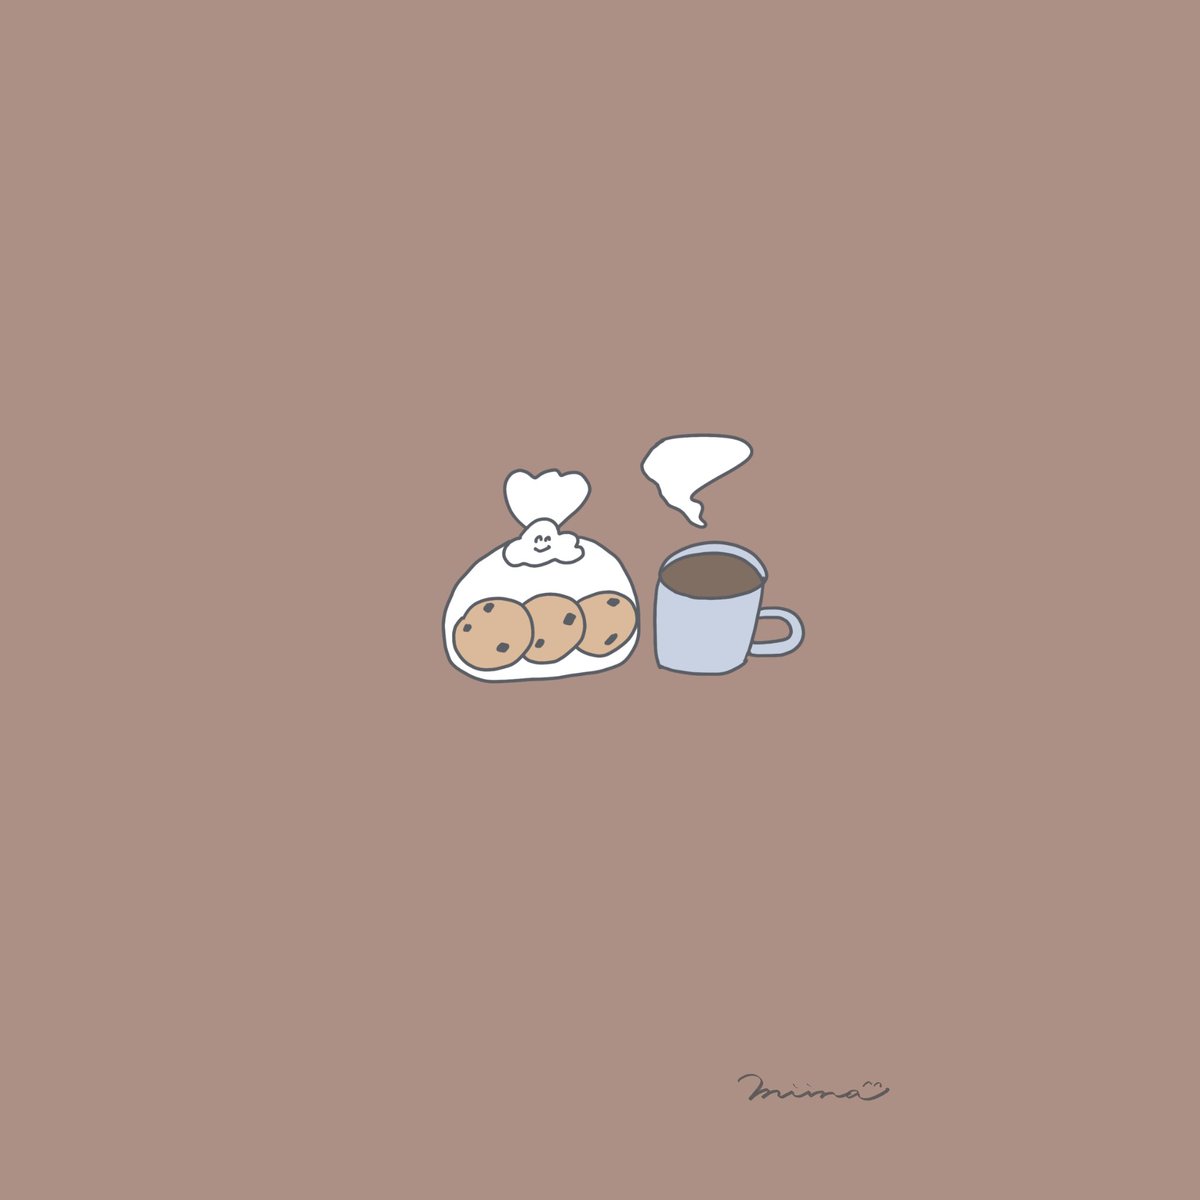 Miina ミイナ イラスト クッキーとコーヒー ひとやすみ ストーリー 壁紙 シンプルイラスト ゆるいイラスト ほんわかイラスト 線画 絵描きさんと繋がりたい イラスト好きな人と繋がりたい クッキー コーヒー Cookie Coffee